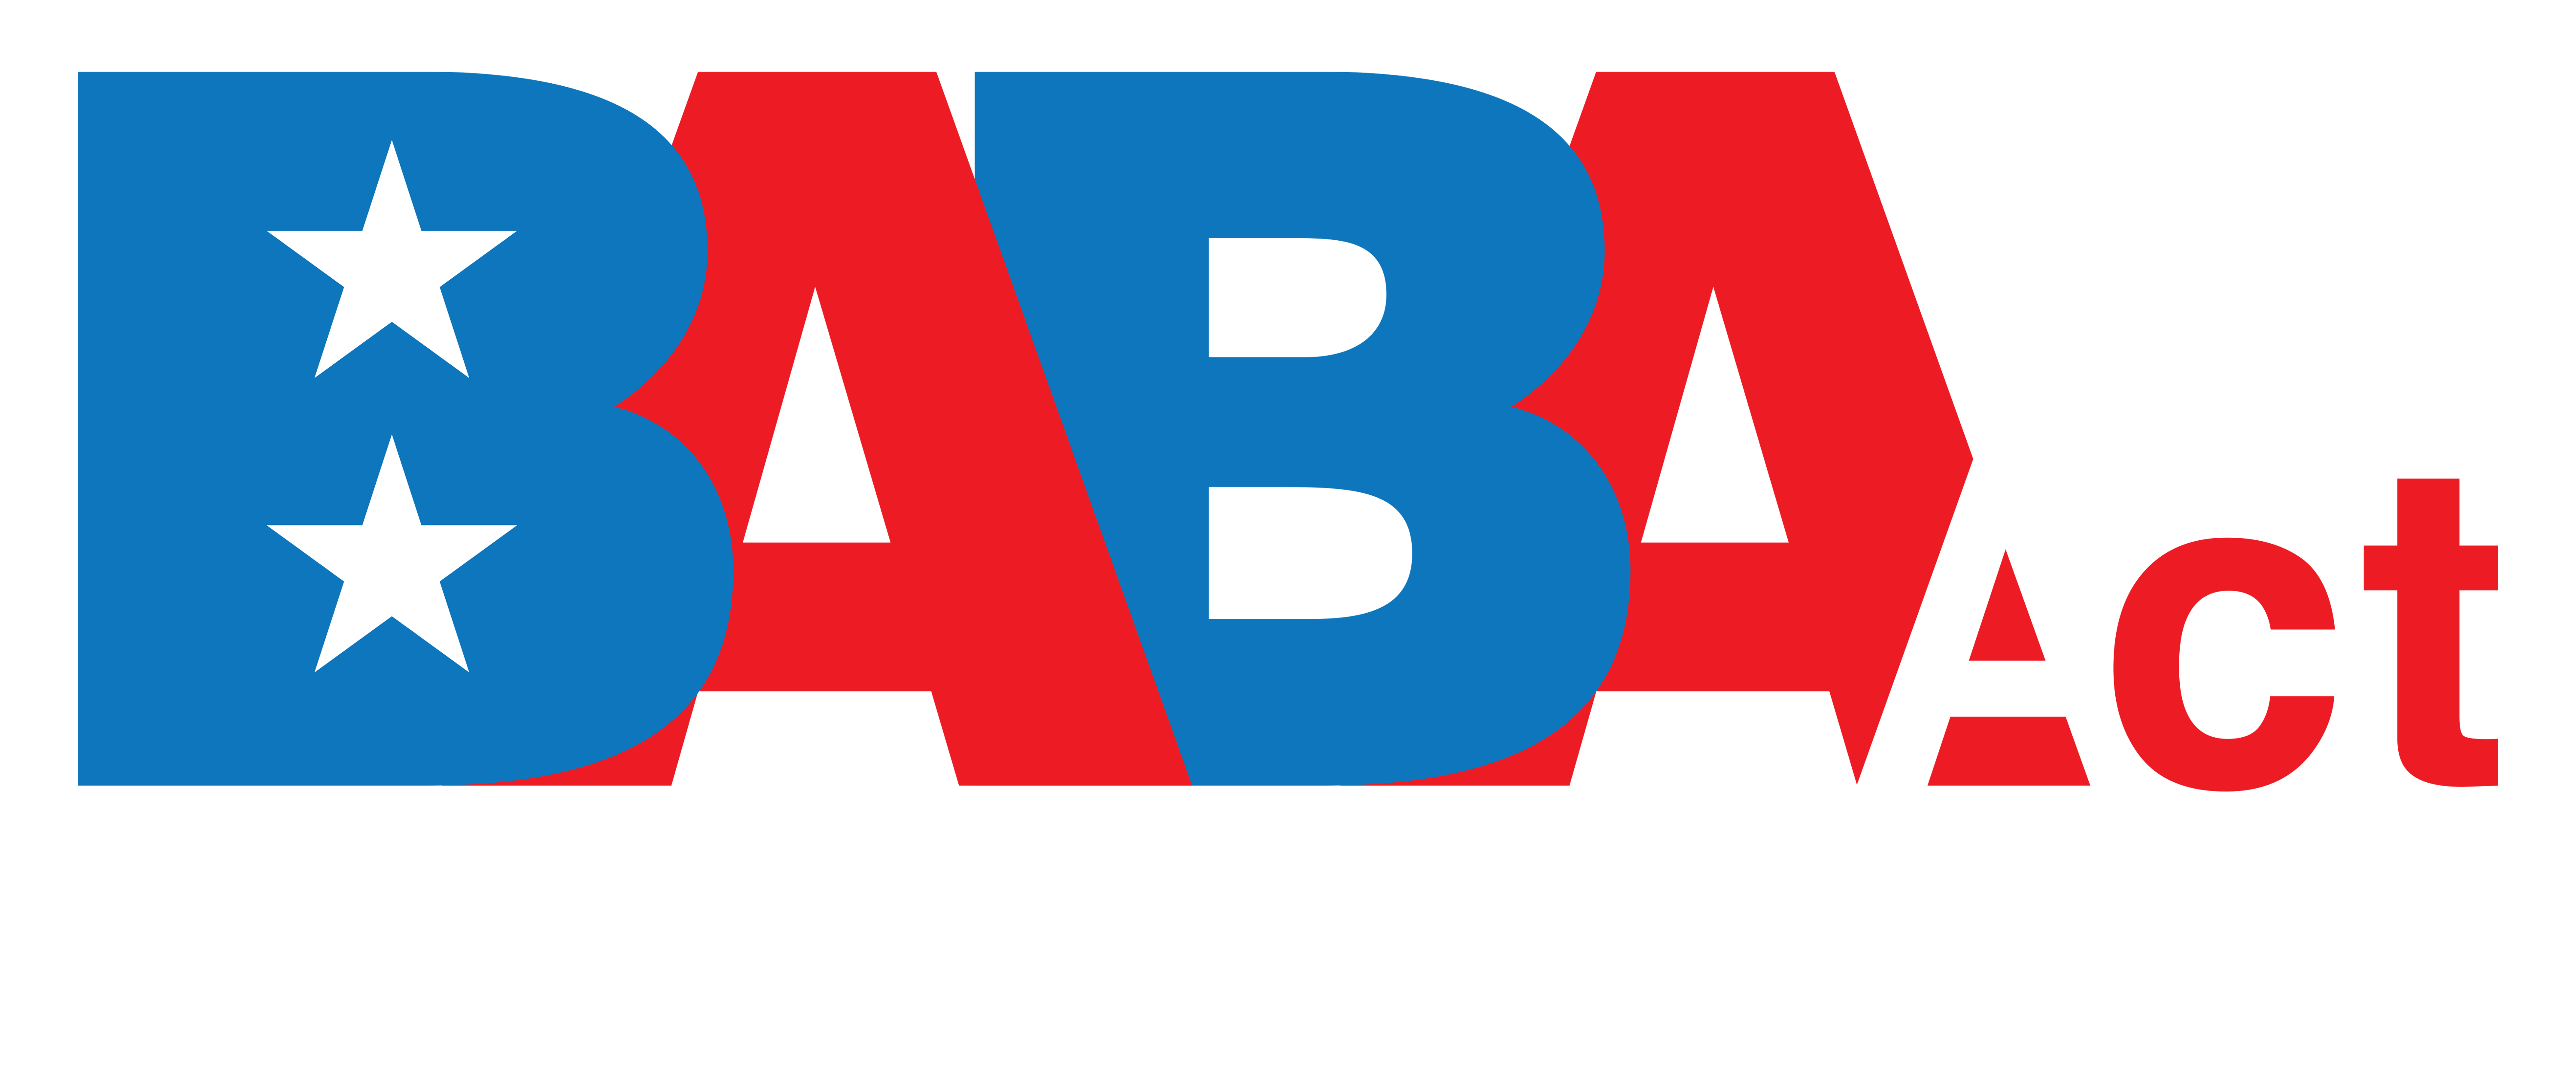 BABA-Logo-Horizontal-Reverse